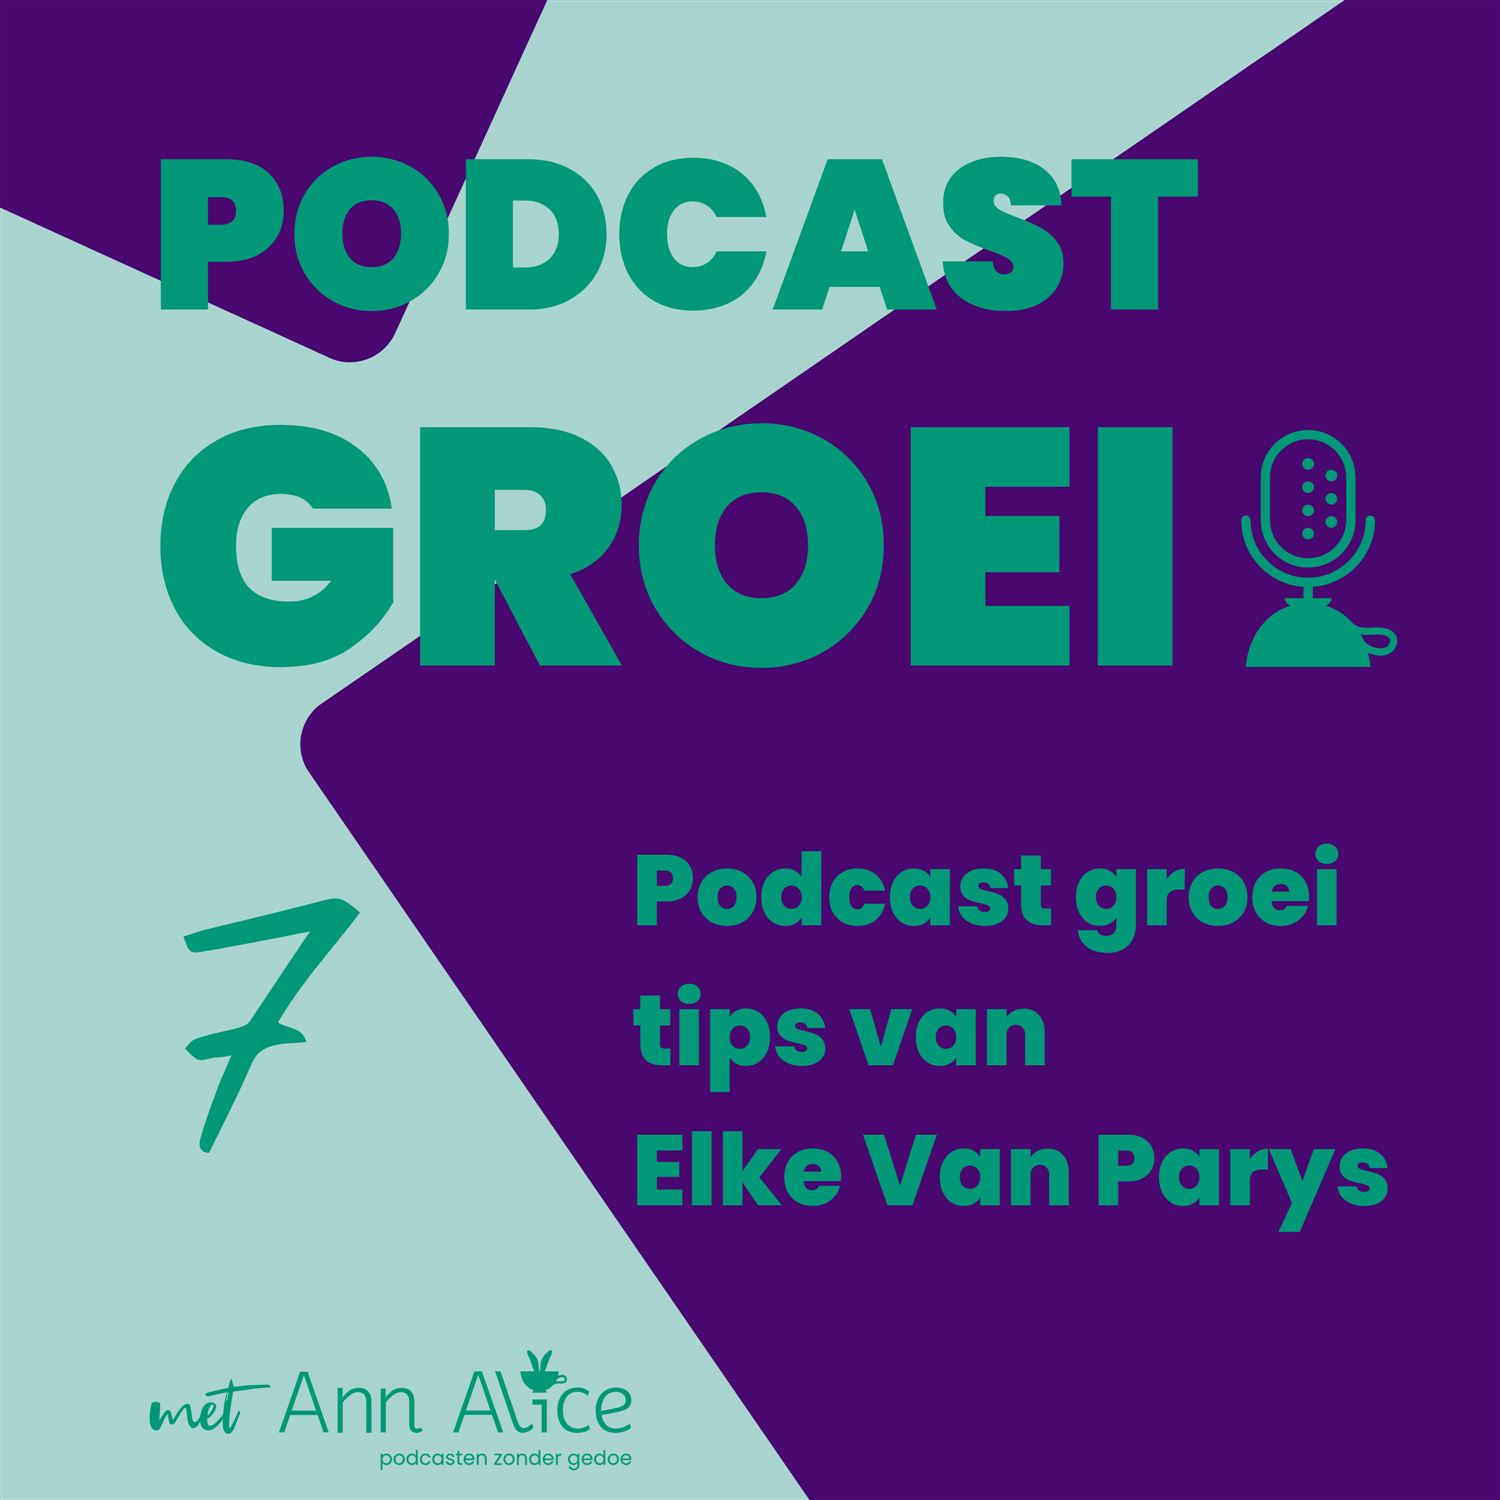 7. Podcast groei tips van Elke Van Parys